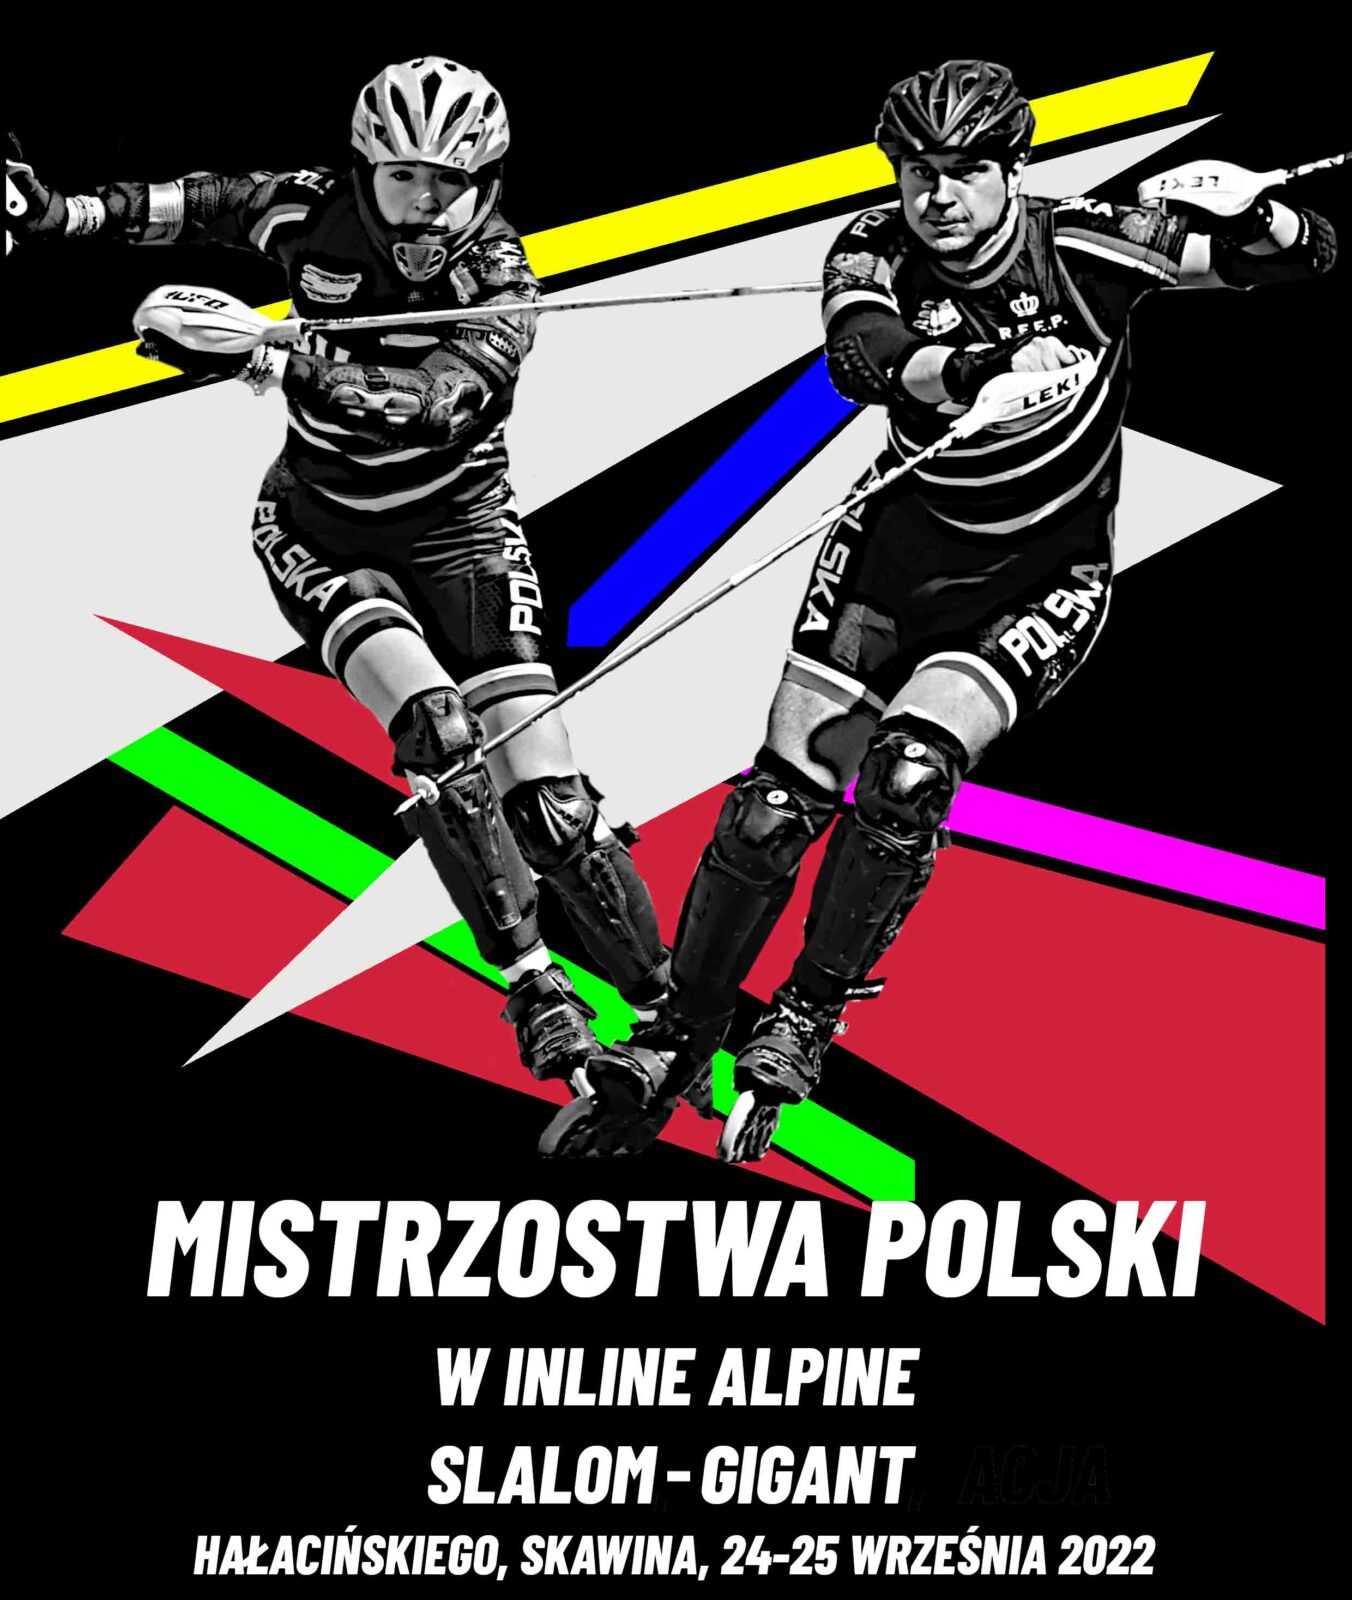 Plakat o treści: Mistrzostwa Polski w Inline Apline. Slalom-Gigant. Hałacińskiego, Skawina, 24-25 września 2022